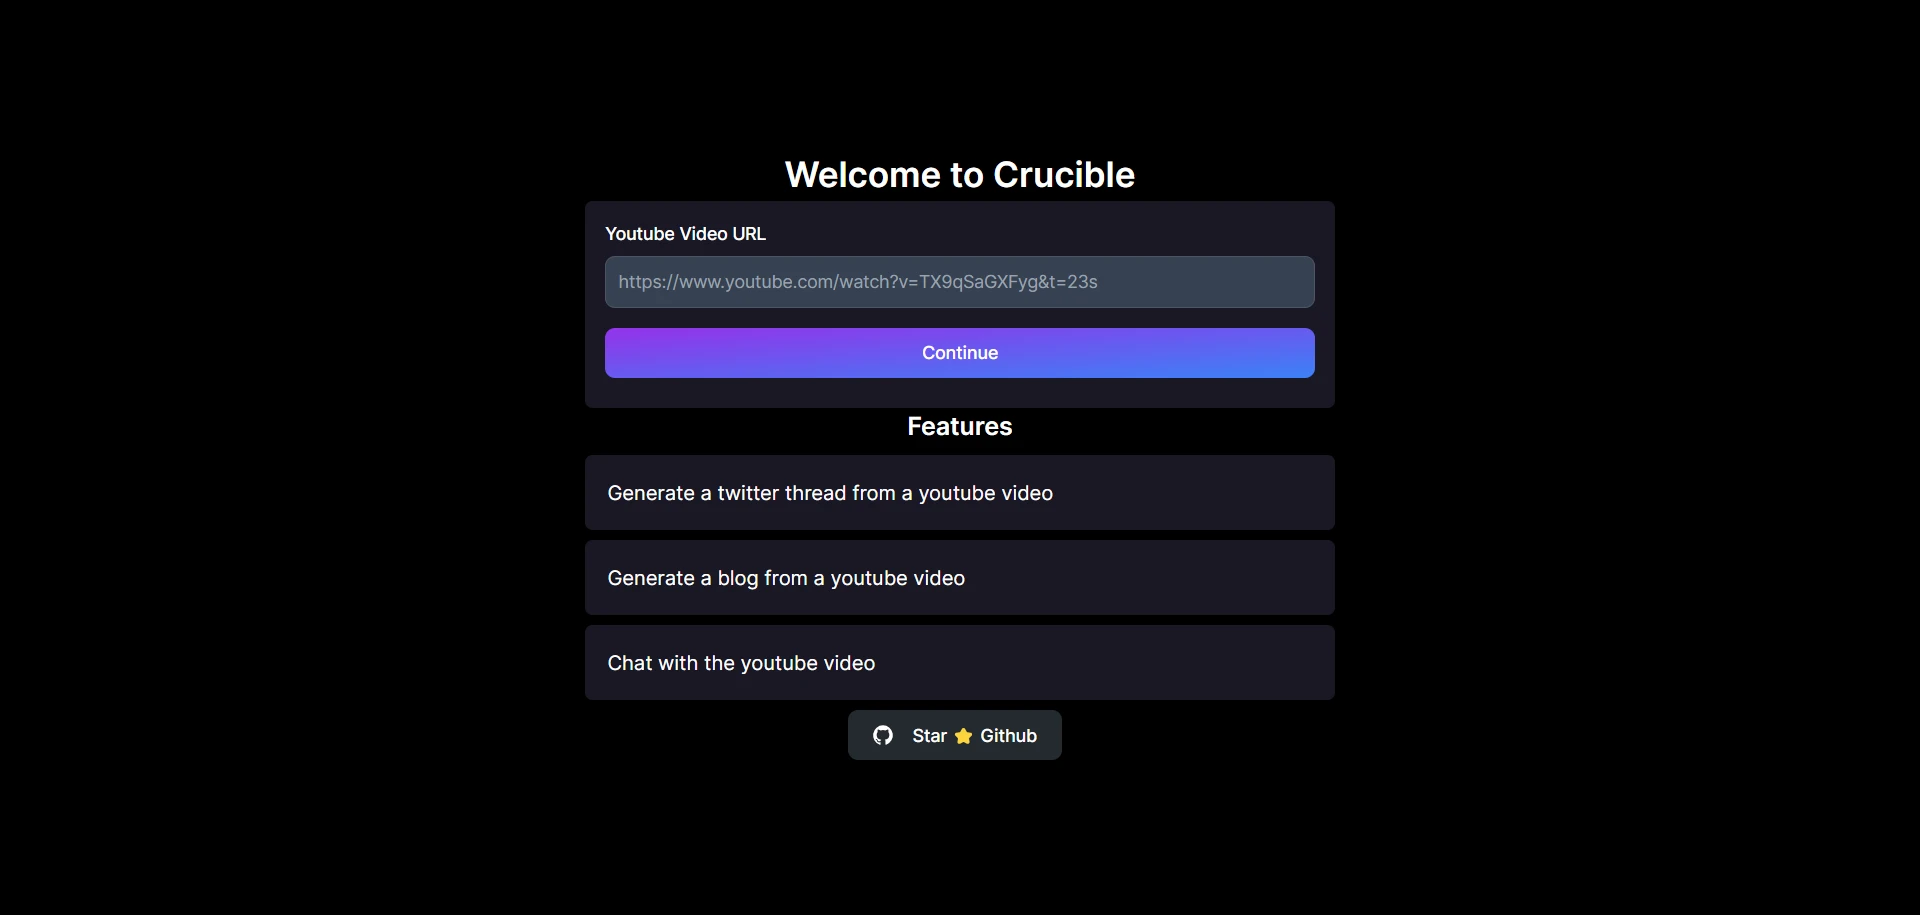 Cruciblewebsite picture